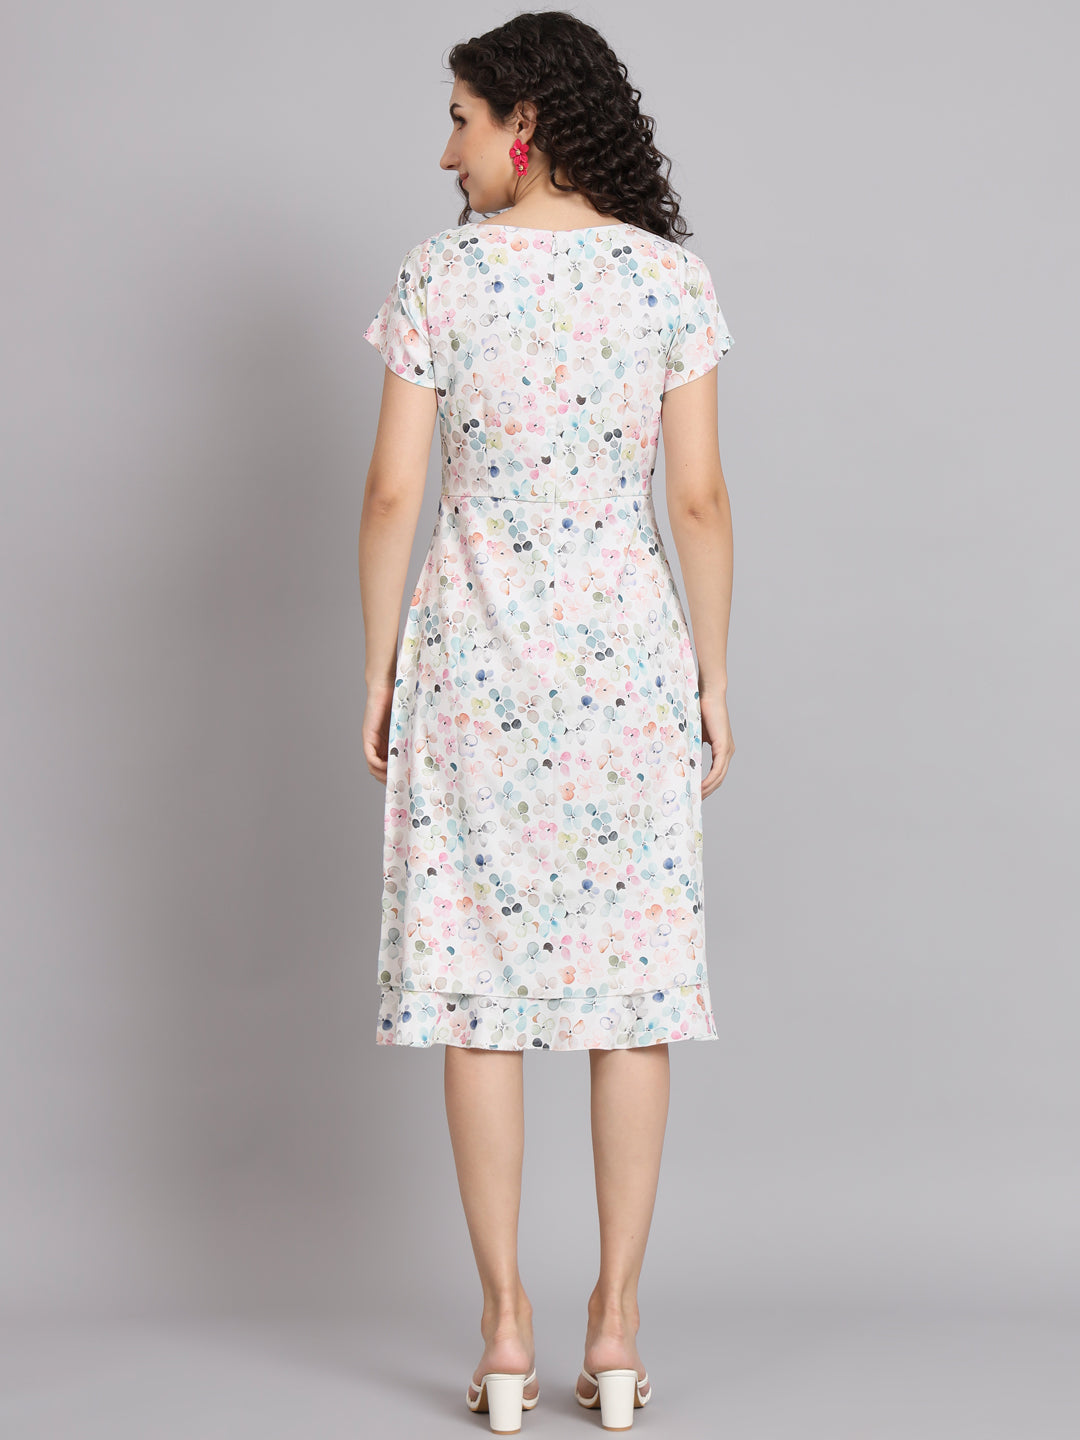 White Polyester Floarl Print Dress